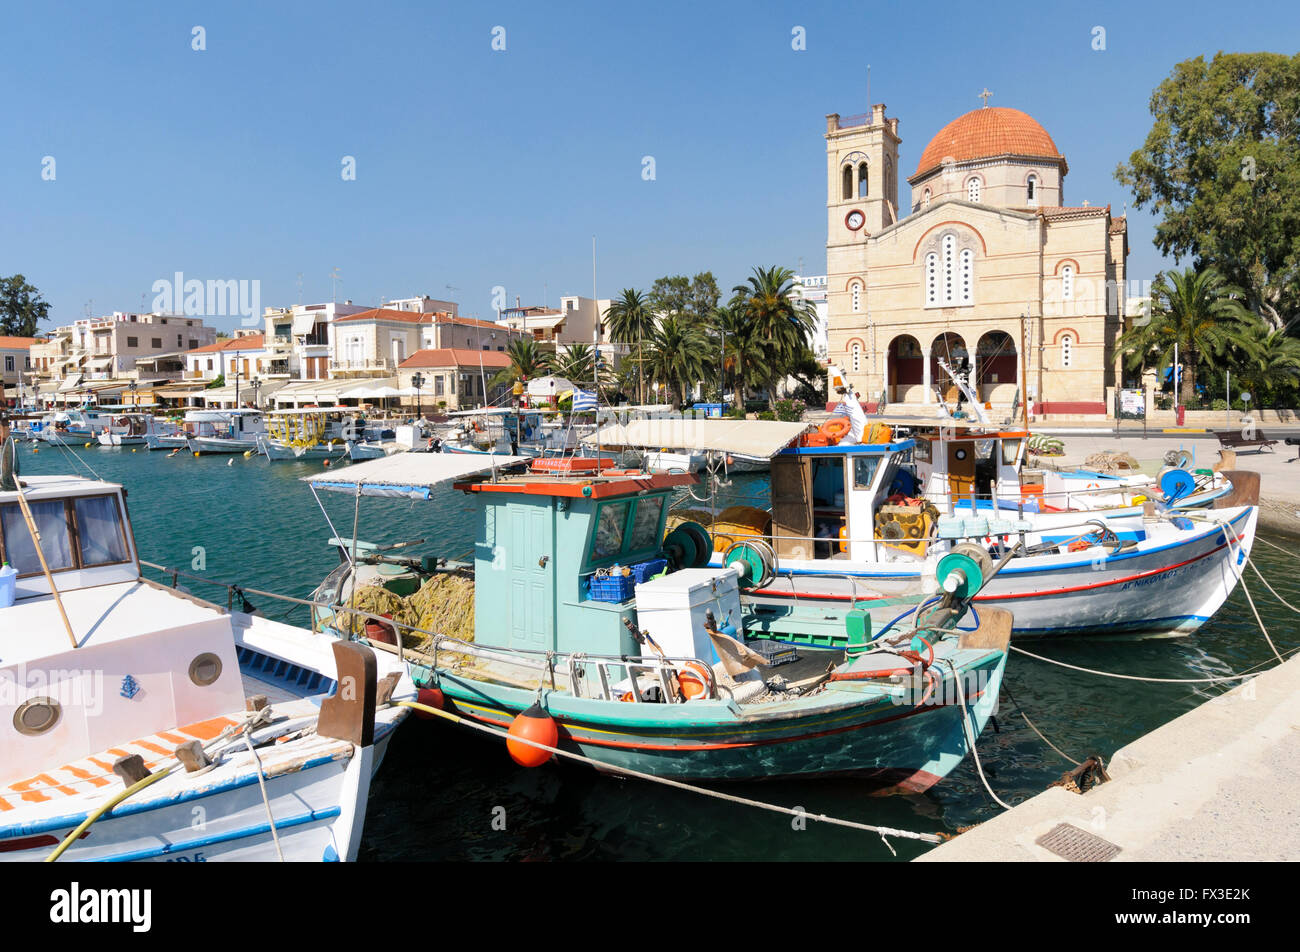 Il porto e la Chiesa Panagitsa, porto di Aegina, EGINA, ISOLE DELL'ARGOSARONICO Grecia Foto Stock